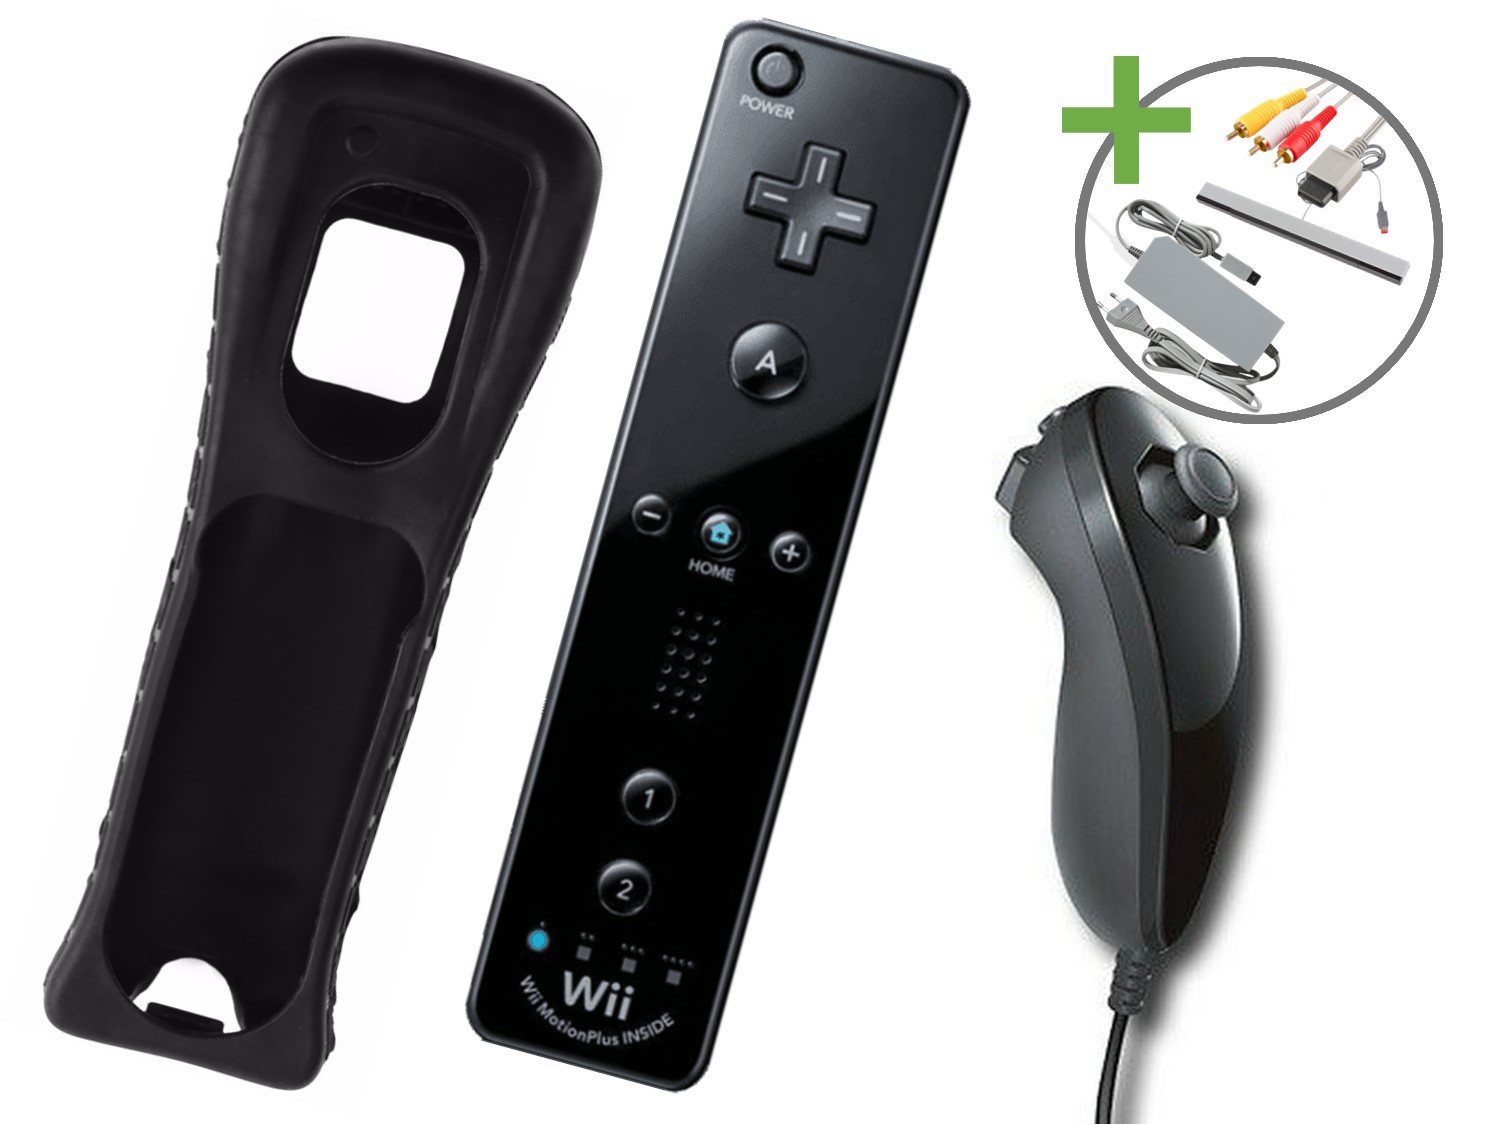 Nintendo Wii Starter Pack - New Super Mario Bros. Wii Edition - Wii Hardware - 3